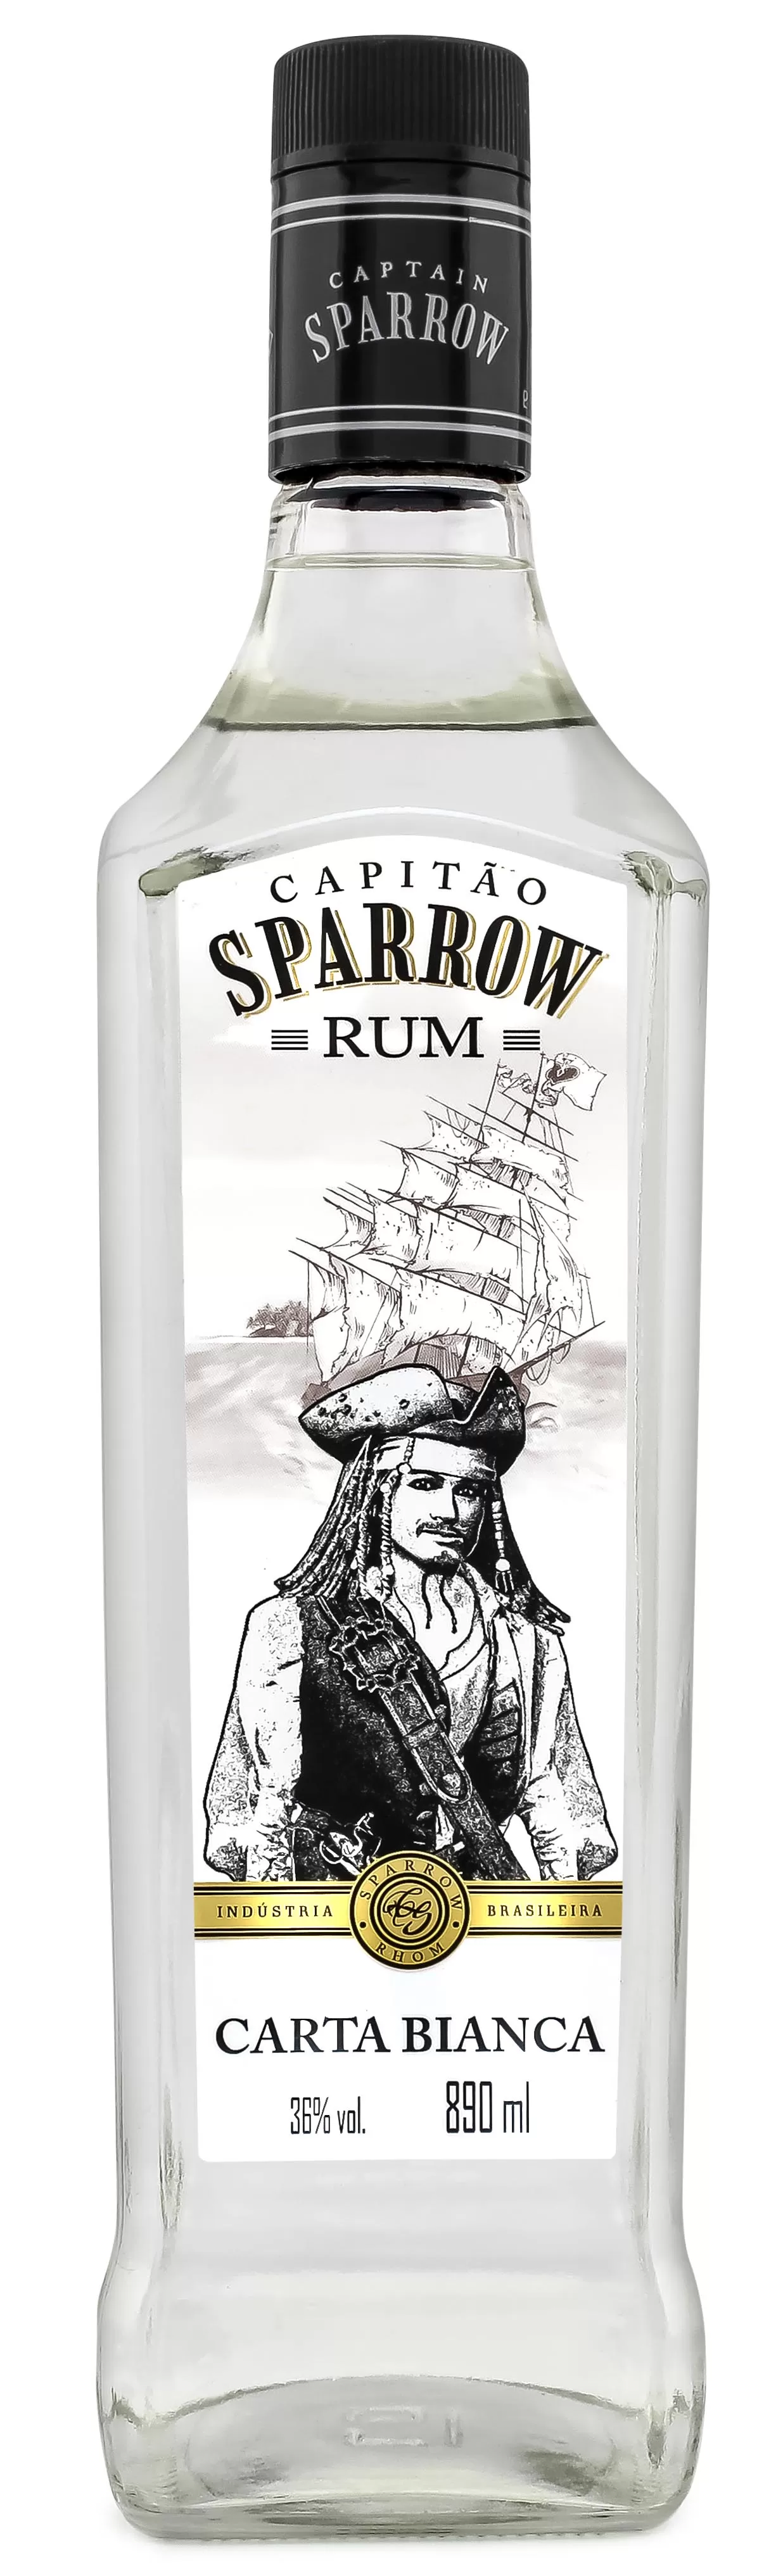 rum capitao sparrow